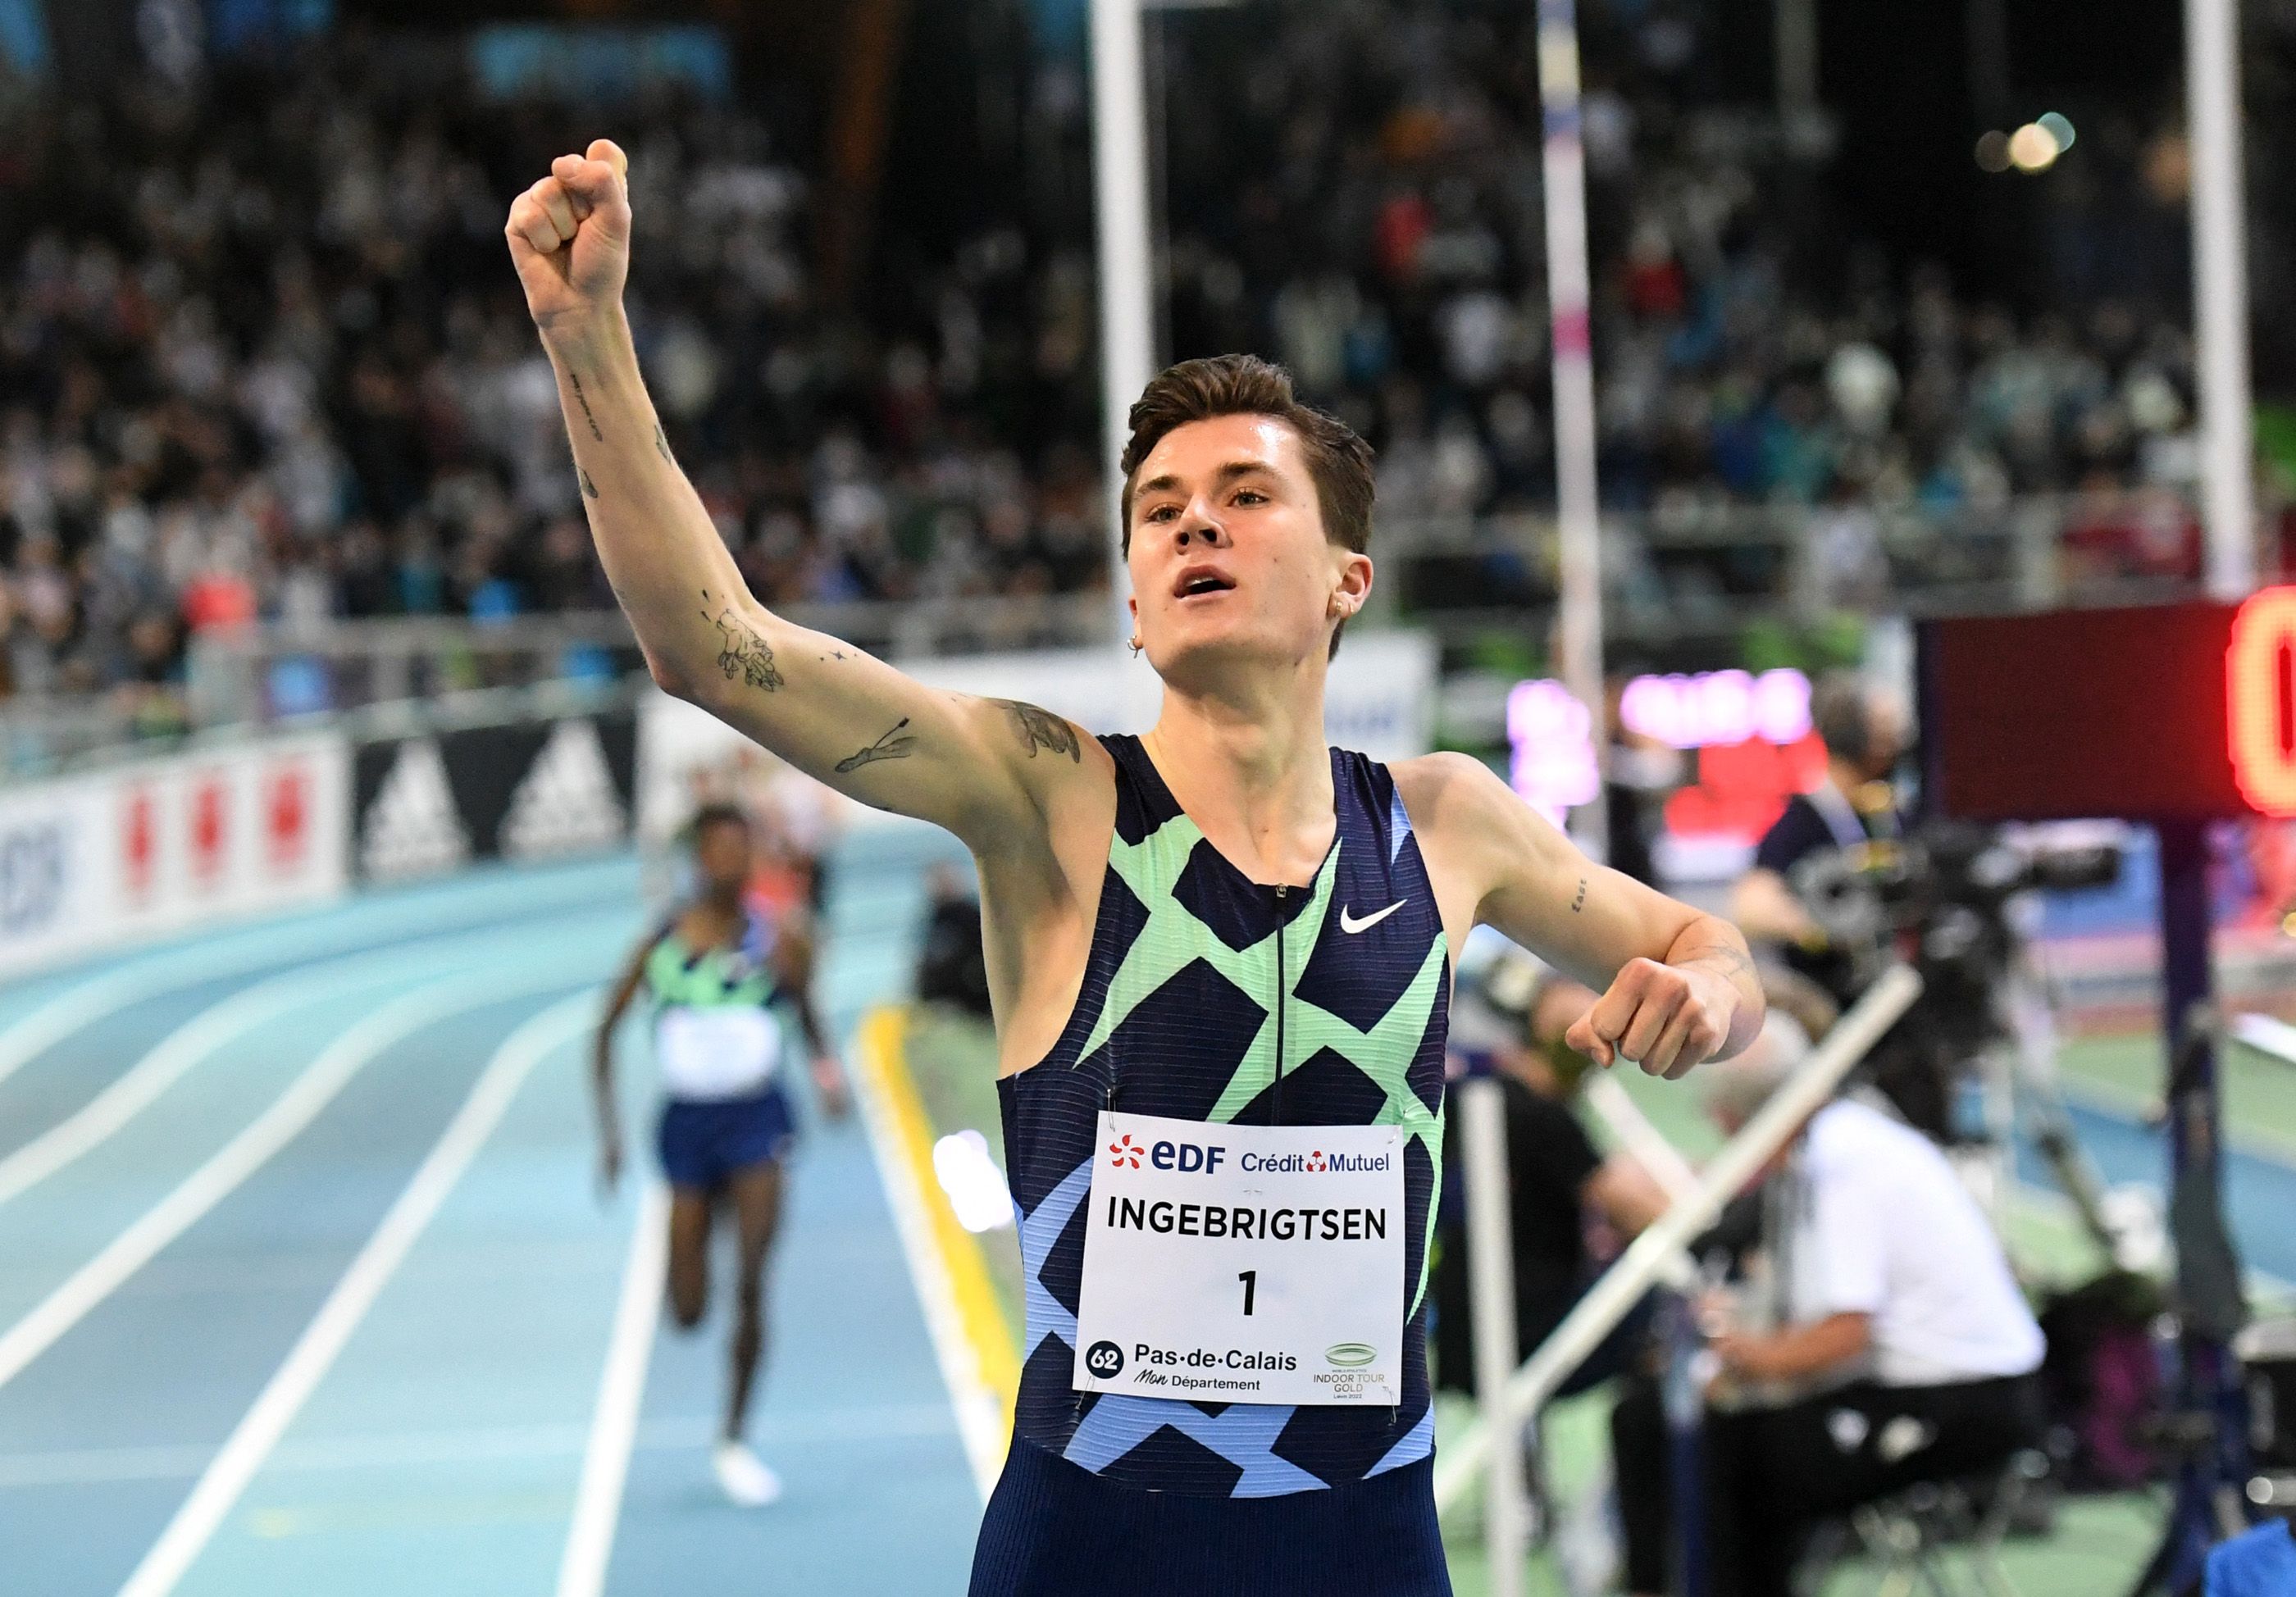 Jakob Ingebrigtsen celebrates his world indoor 1500m record in Lievin